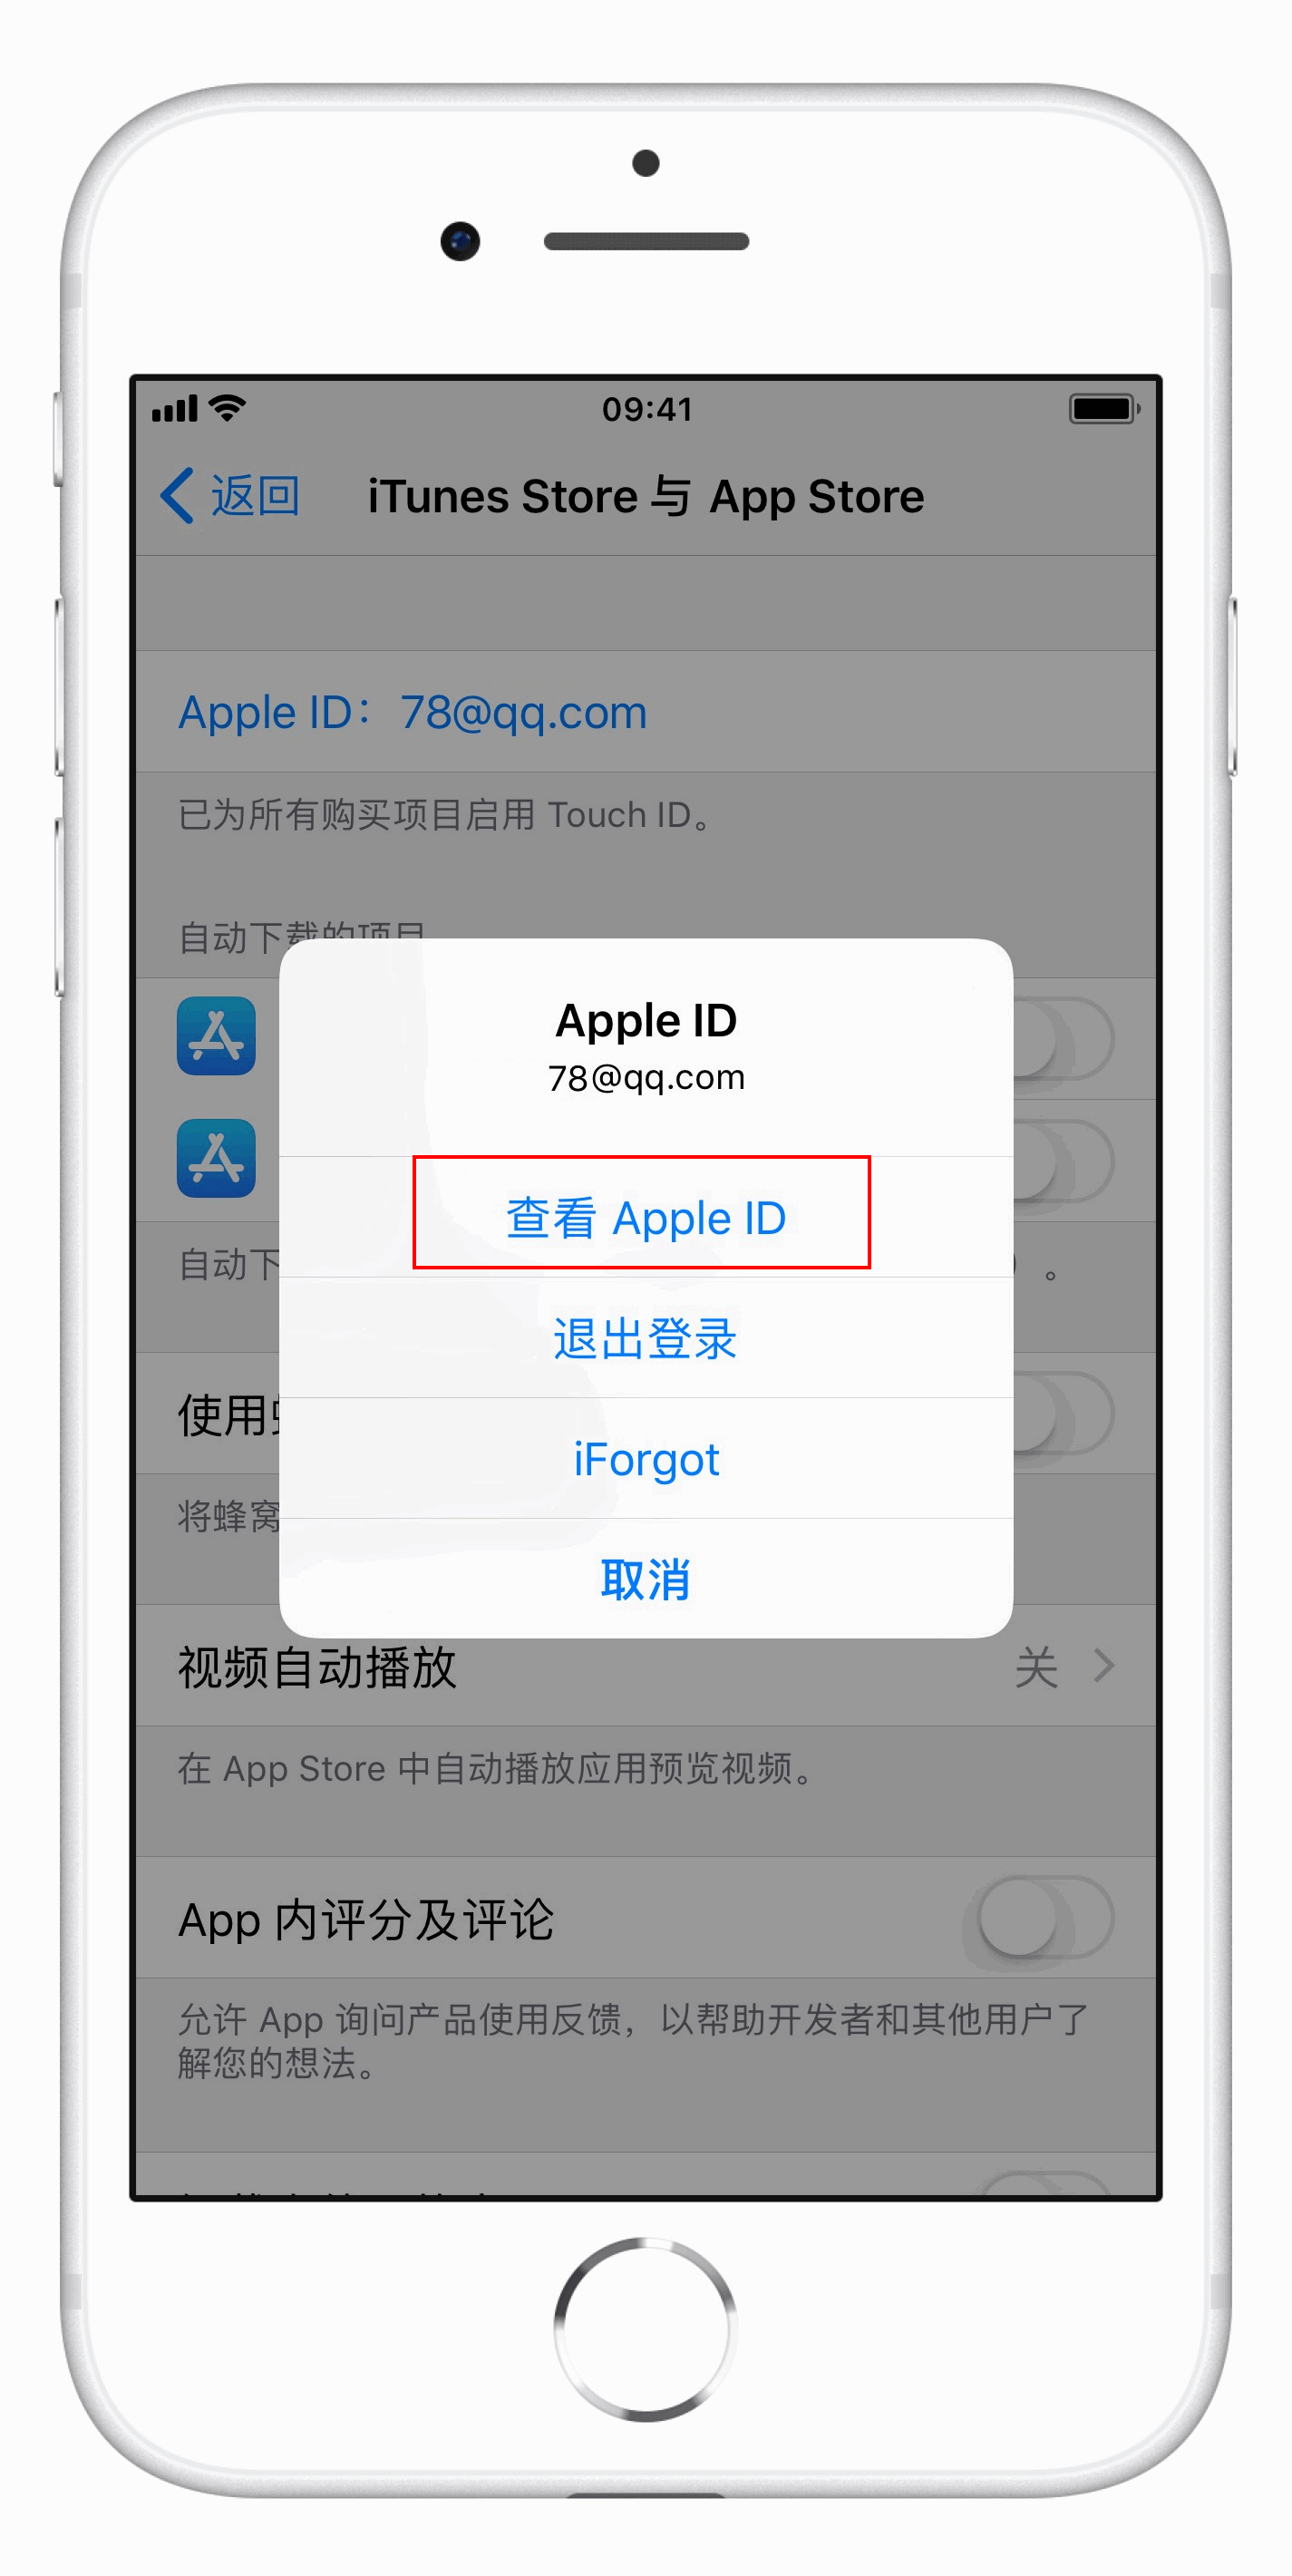 θ App Store ʽ